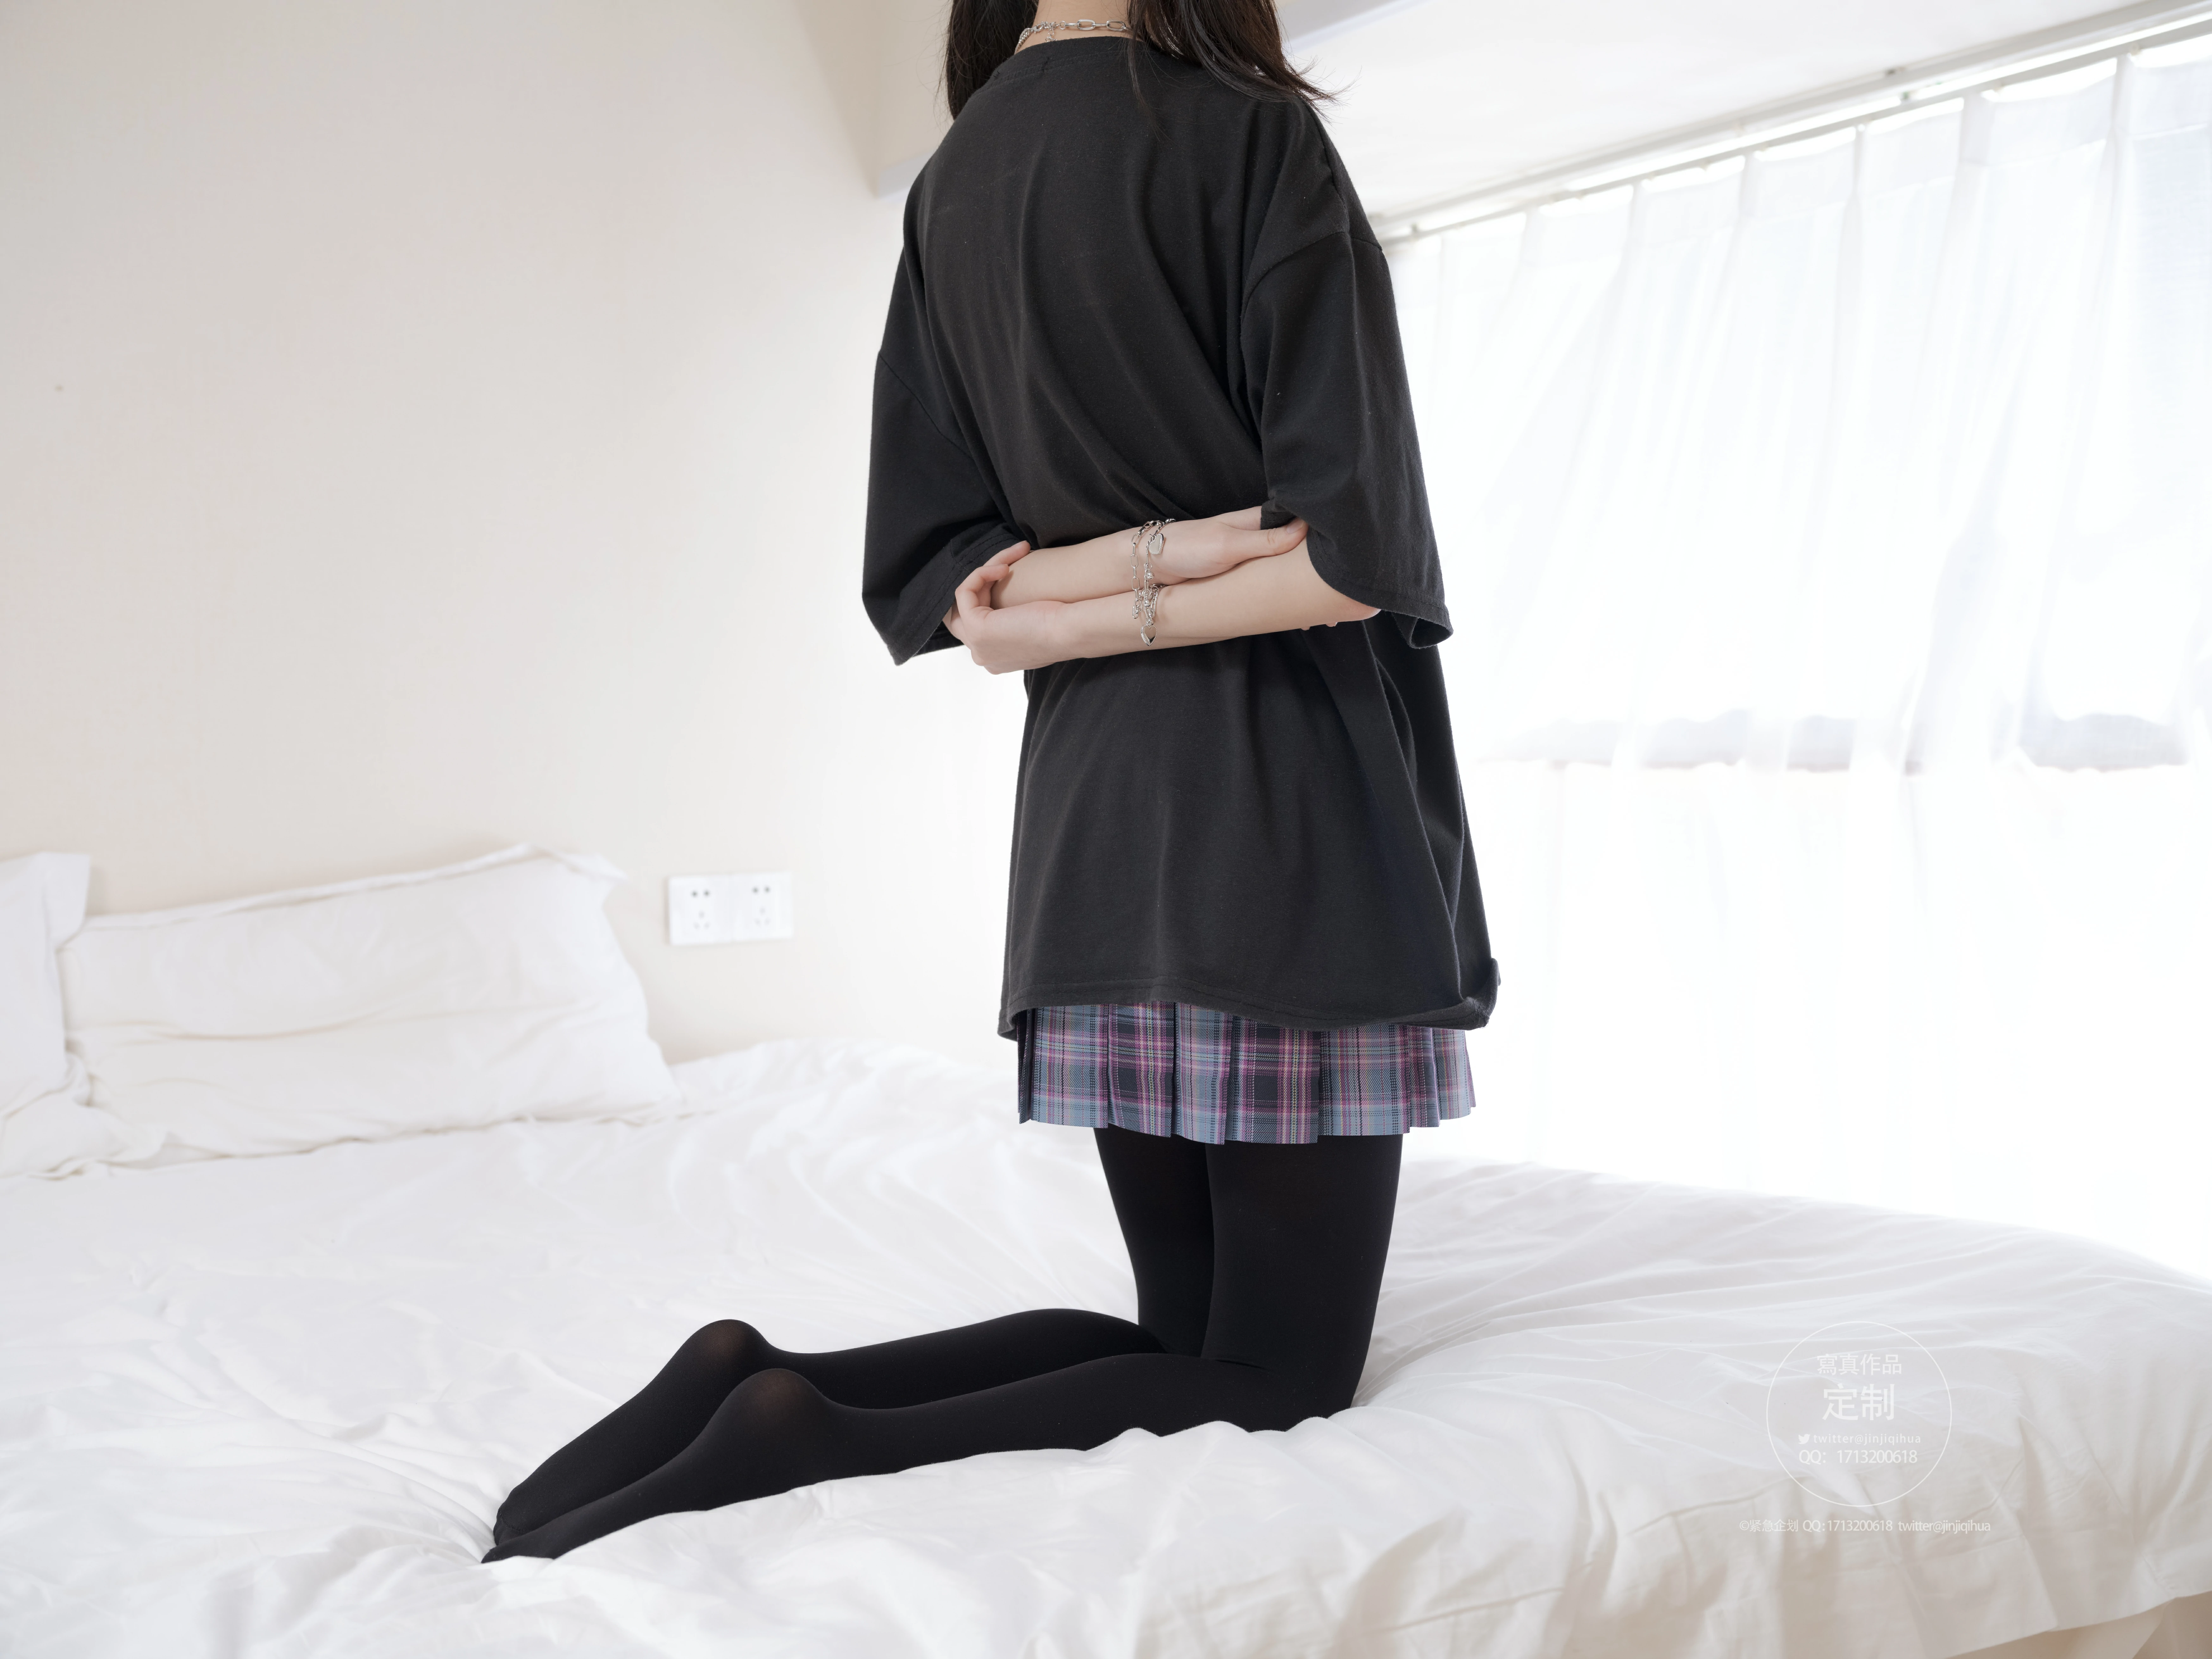 [紧急企划]Y-001 不露脸的少女萝莉 黑色JK制服与格子短裙加黑丝美腿性感私房写真集,0001